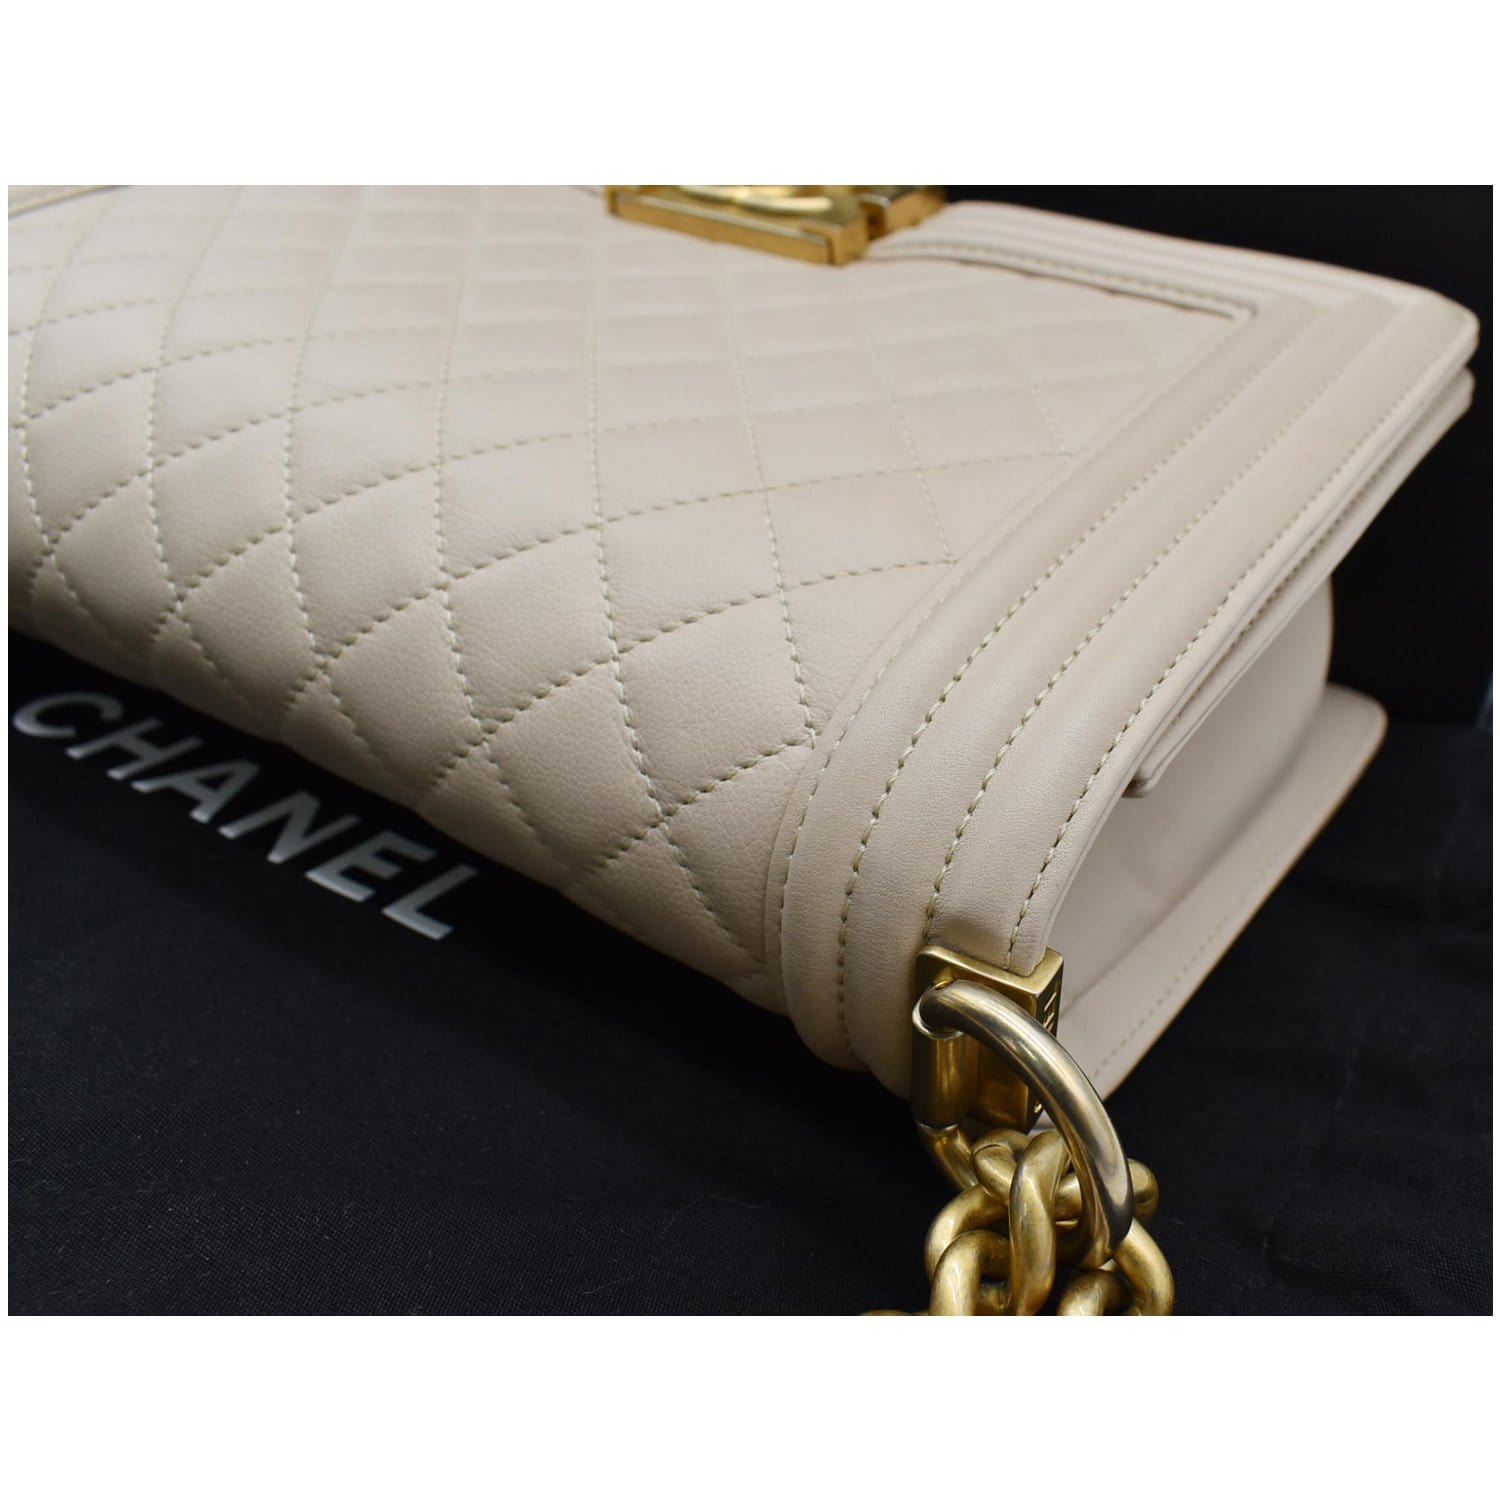 Chanel Medium Boy Flap Quilted Leather Shoulder Bag